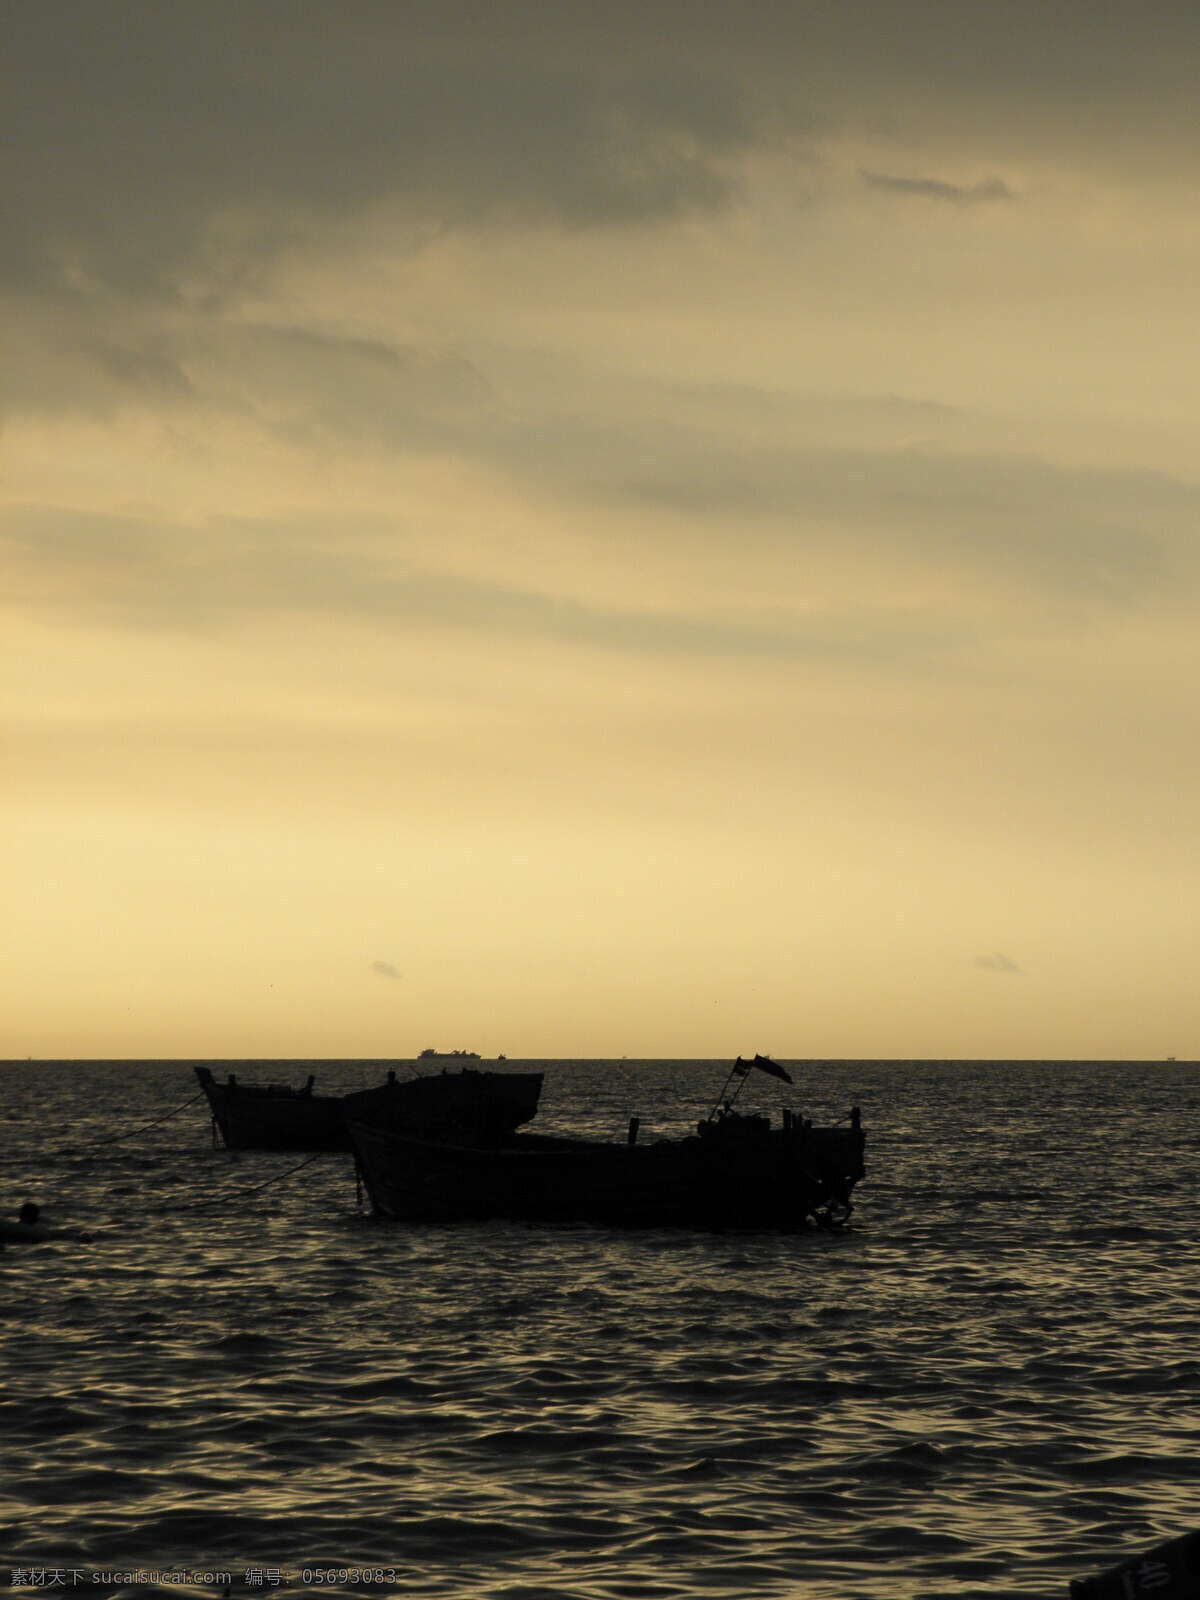 海边 船 海景 海面 渔船 自然风景 自然景观 边的船 阴云密布 风景 生活 旅游餐饮